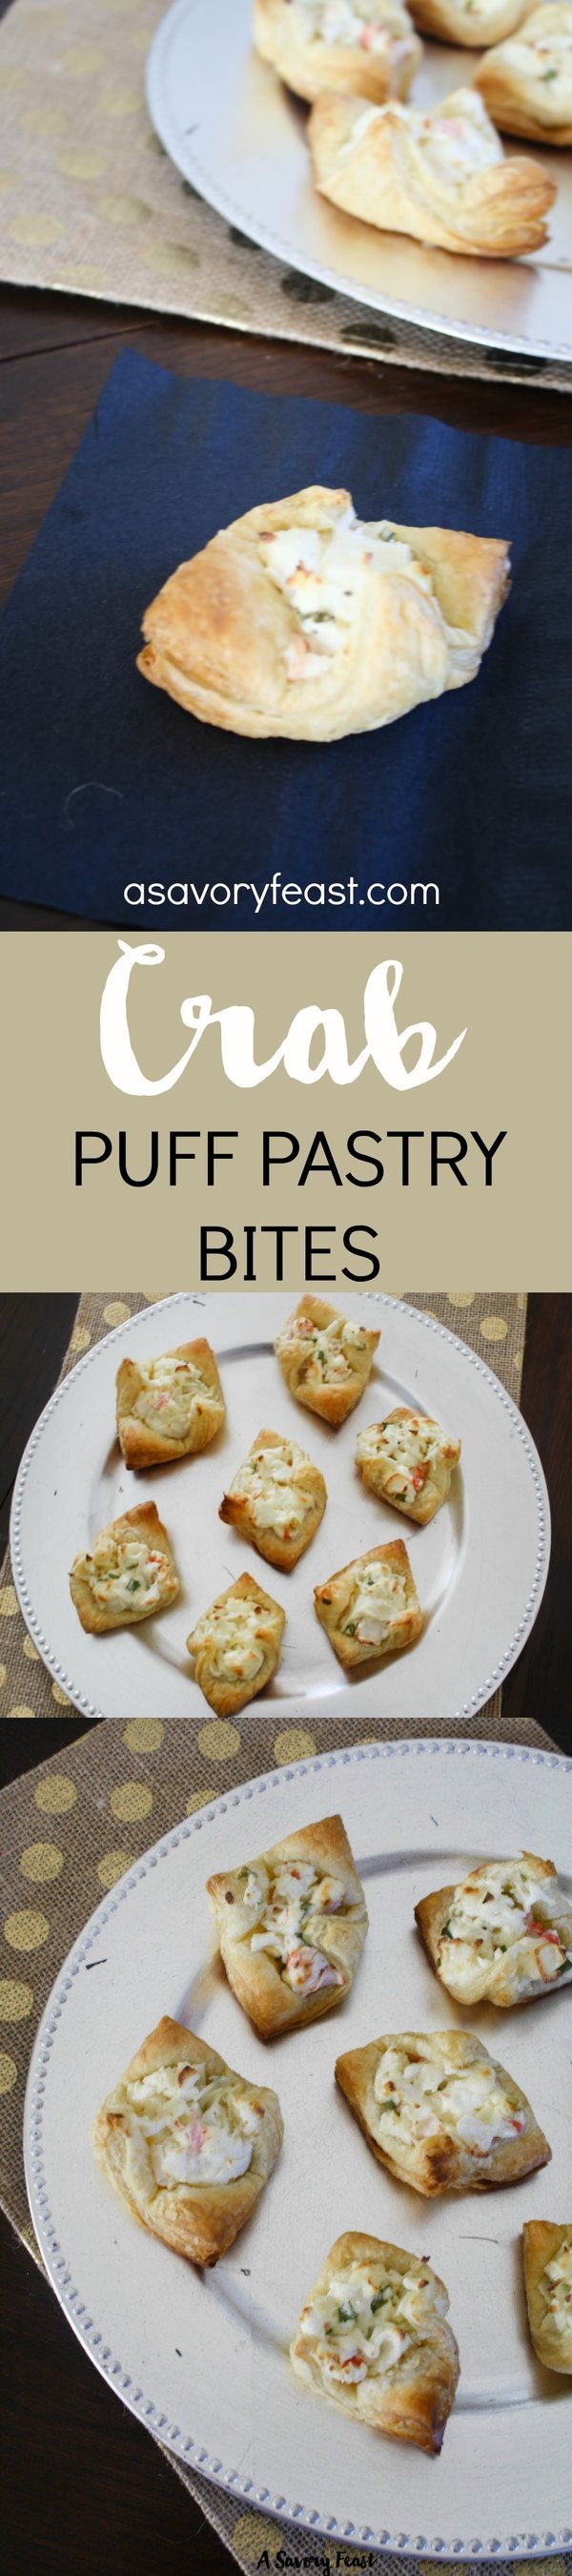 Crab Puff Pastry Bites